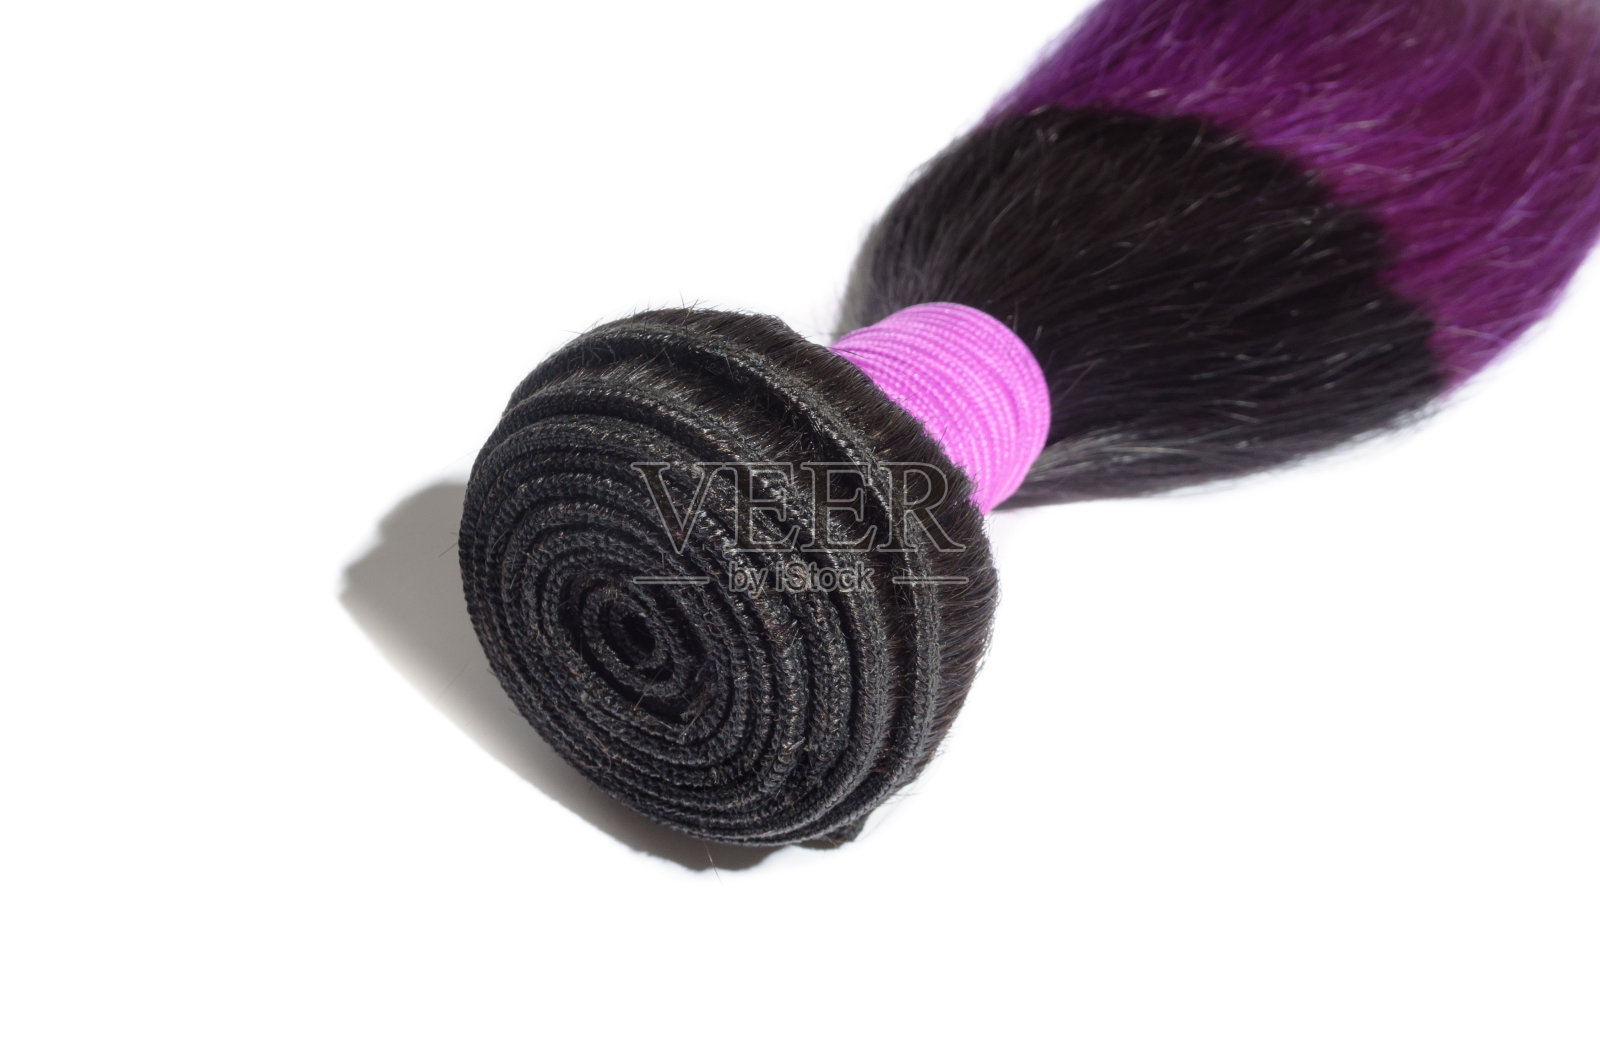 直的两色调暗黑色与紫色的人类头发编织延伸束照片摄影图片